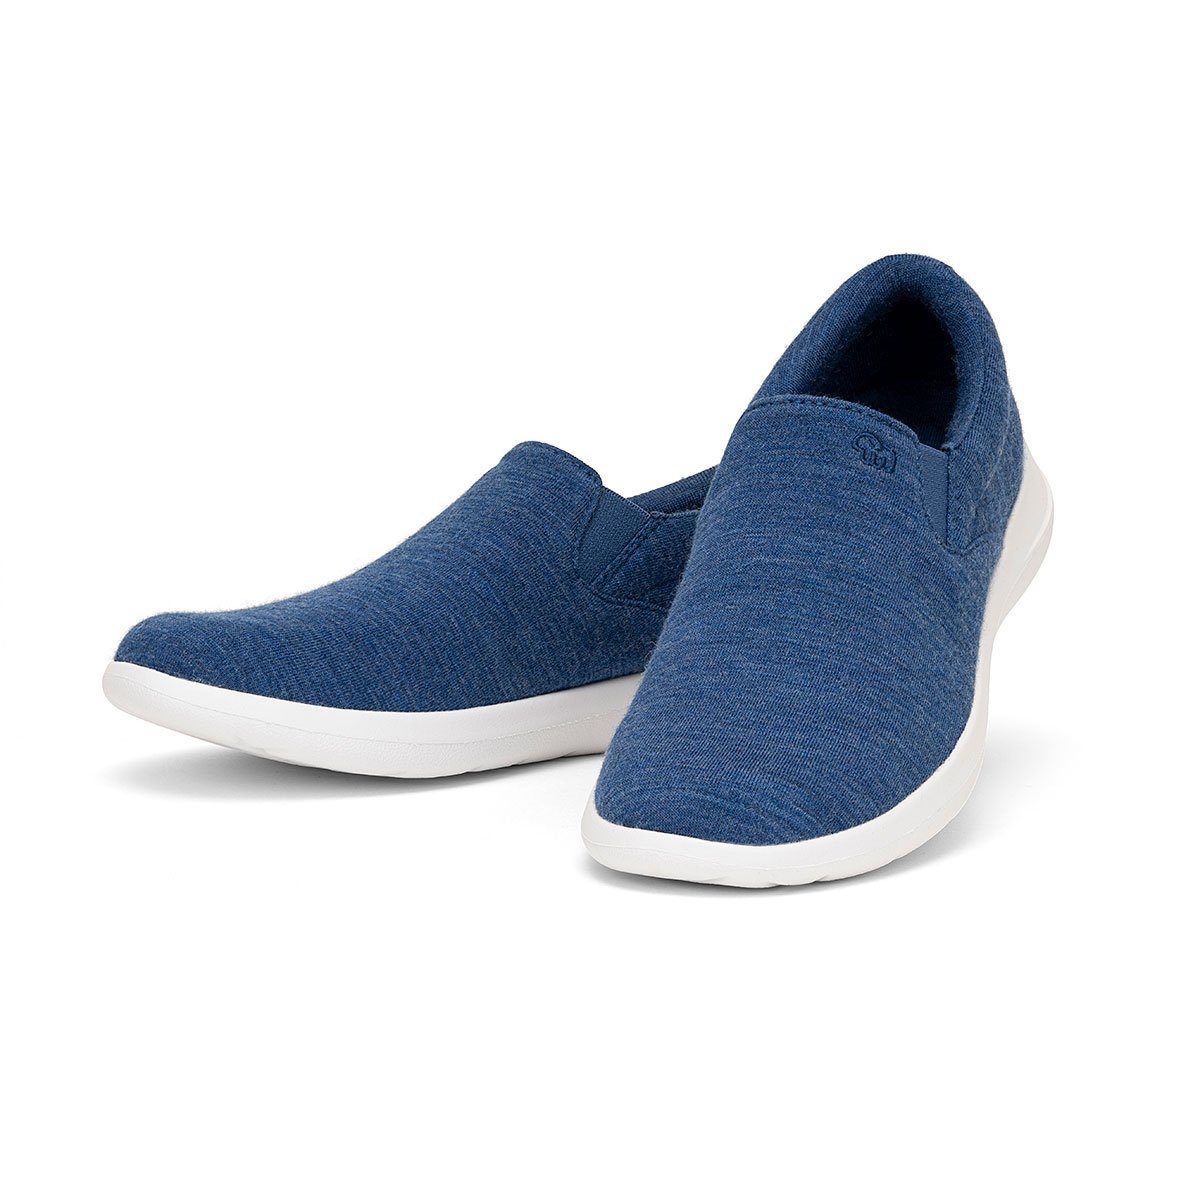 jeansblau merinoshoes.de - Schuh Merinowolle Funktion Sneaker merinos Eleganter Slip-On Damenschuh blauer Atmungsaktiver aus mit